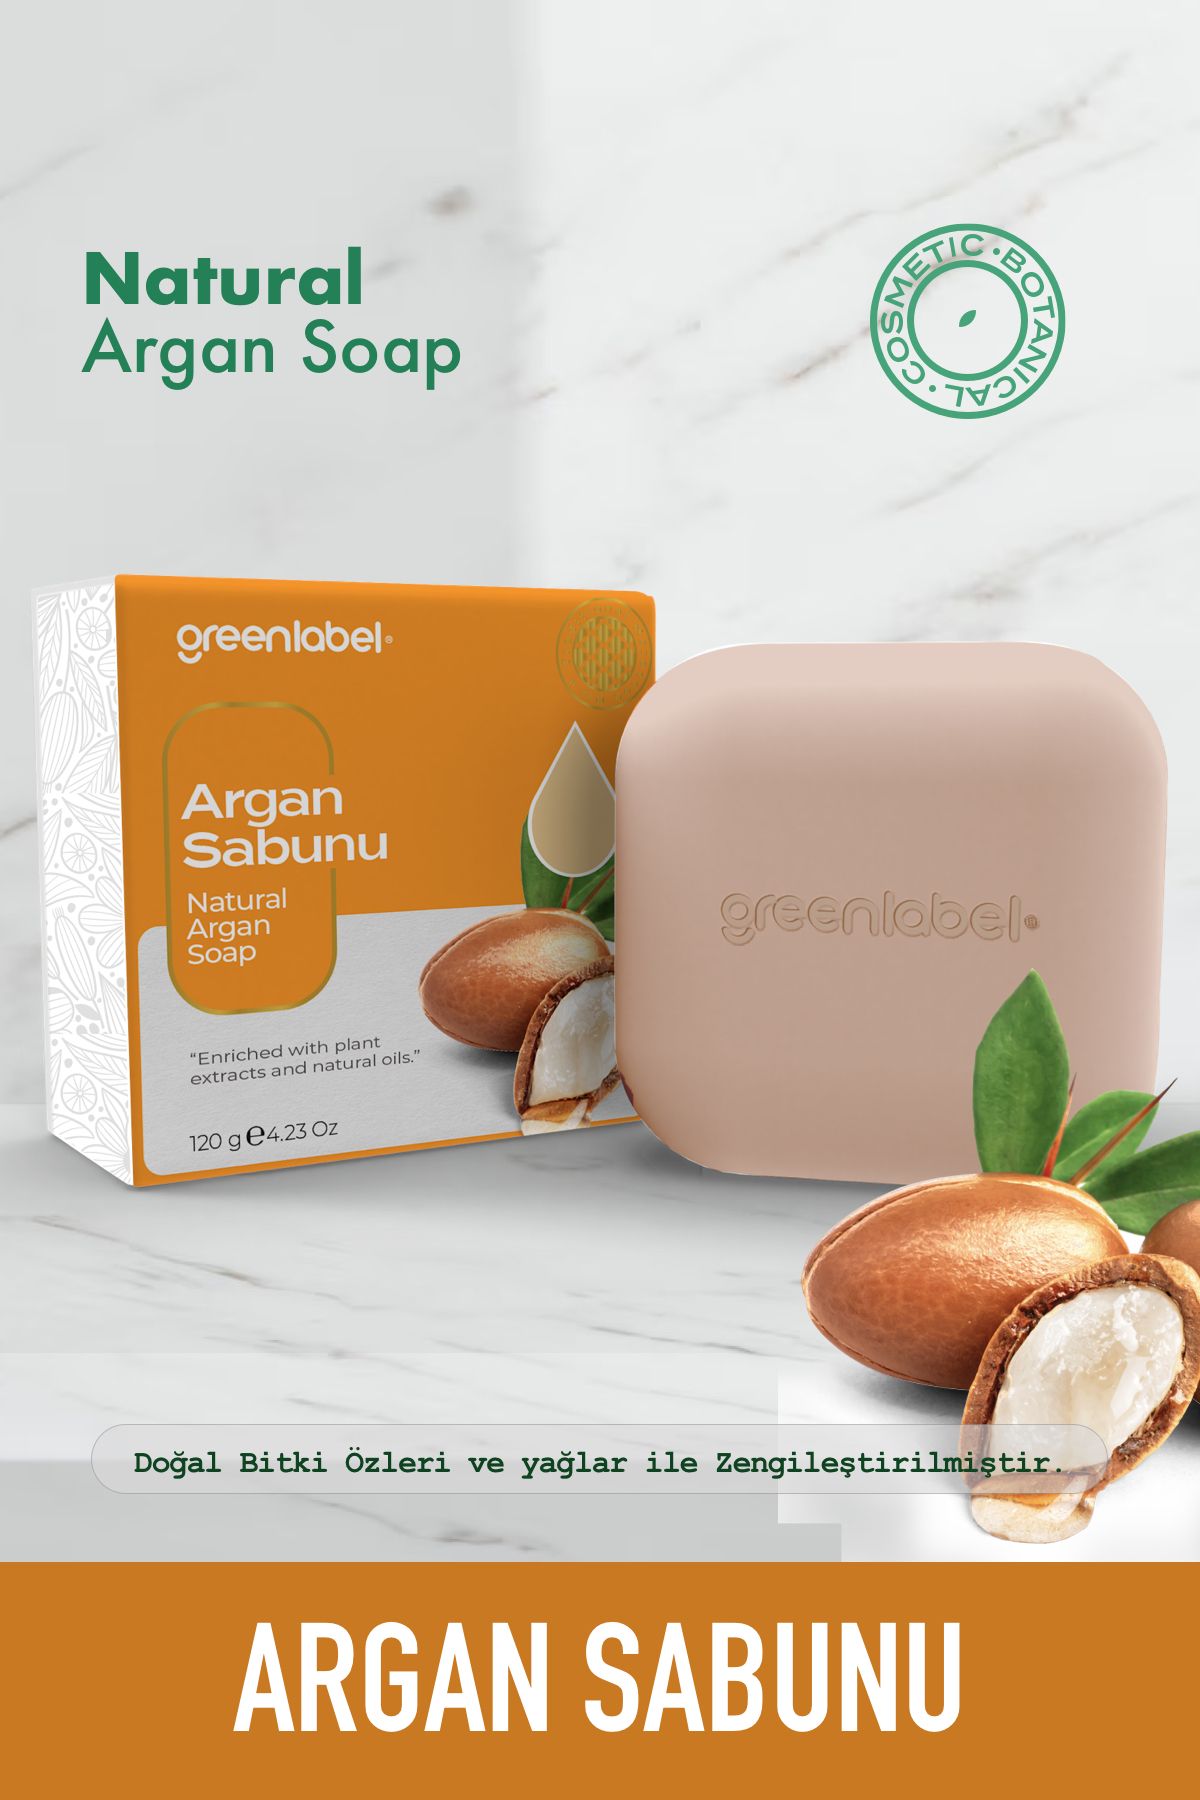 Green Label Argan Sabunu Natural Besleyici Ve Tazeleyici 120 Gr.